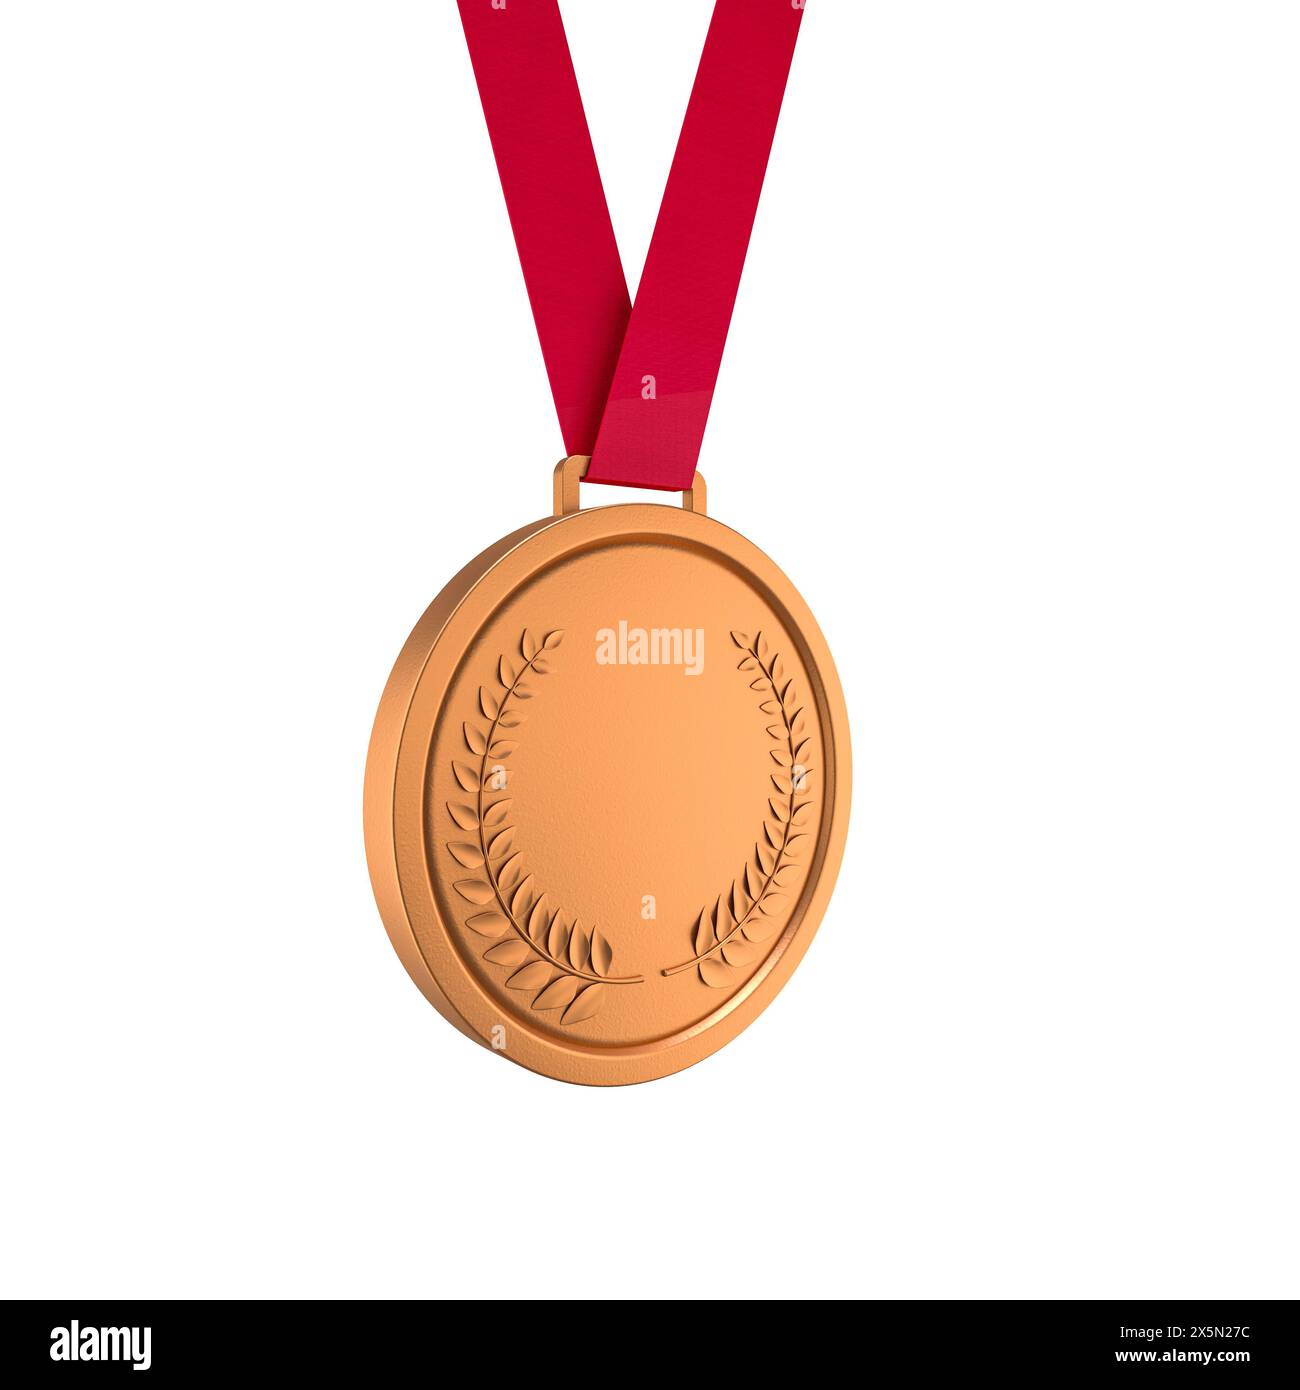 il nastro rosso appeso alla medaglia di bronzo premia i riconoscimenti. successo, realizzazione Foto Stock